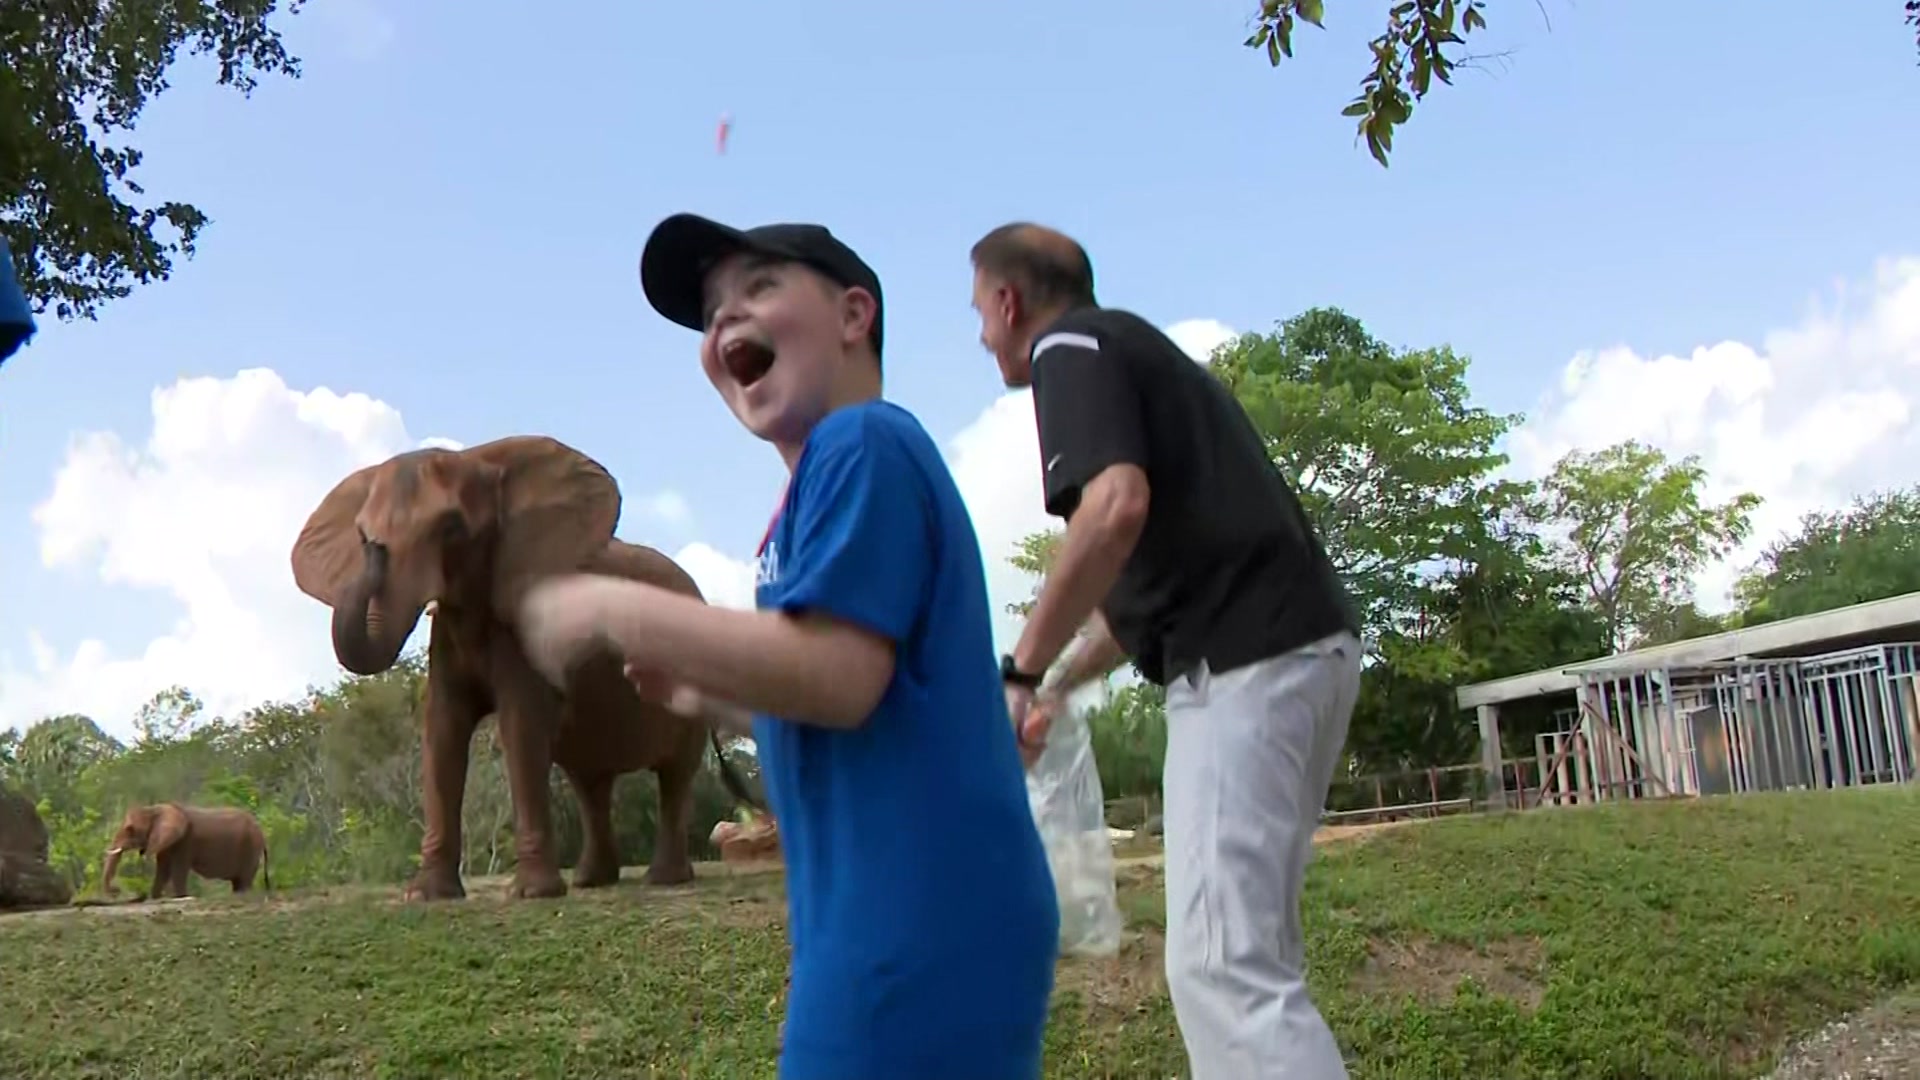 Make-A-Wish Foundation Makes Iowa Boy’s Dreams Come True At Zoo Miami